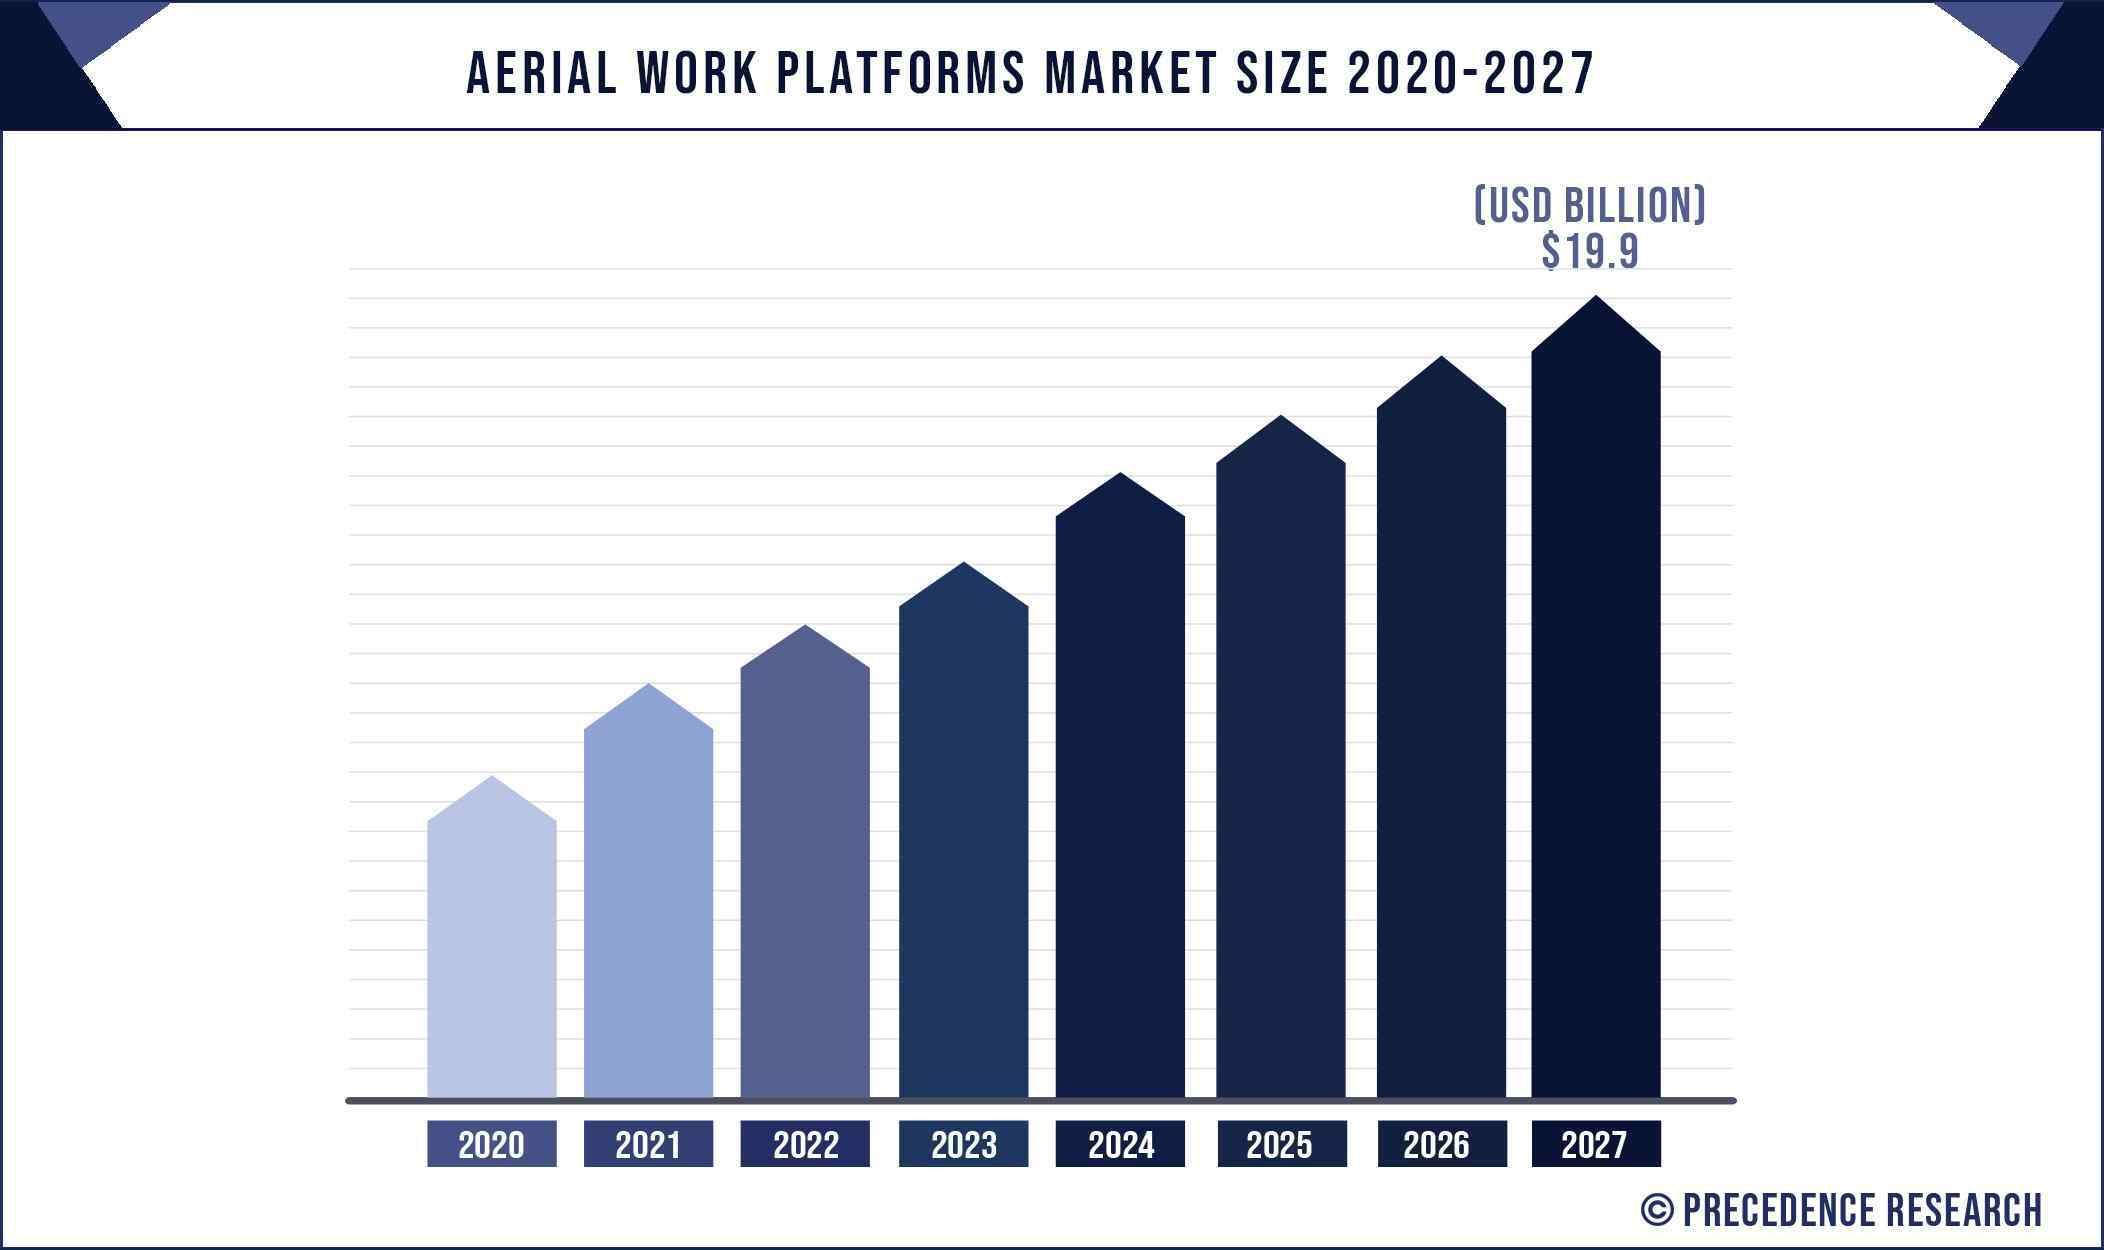 Aerial Work Platforms Market Size 2020 to 2027